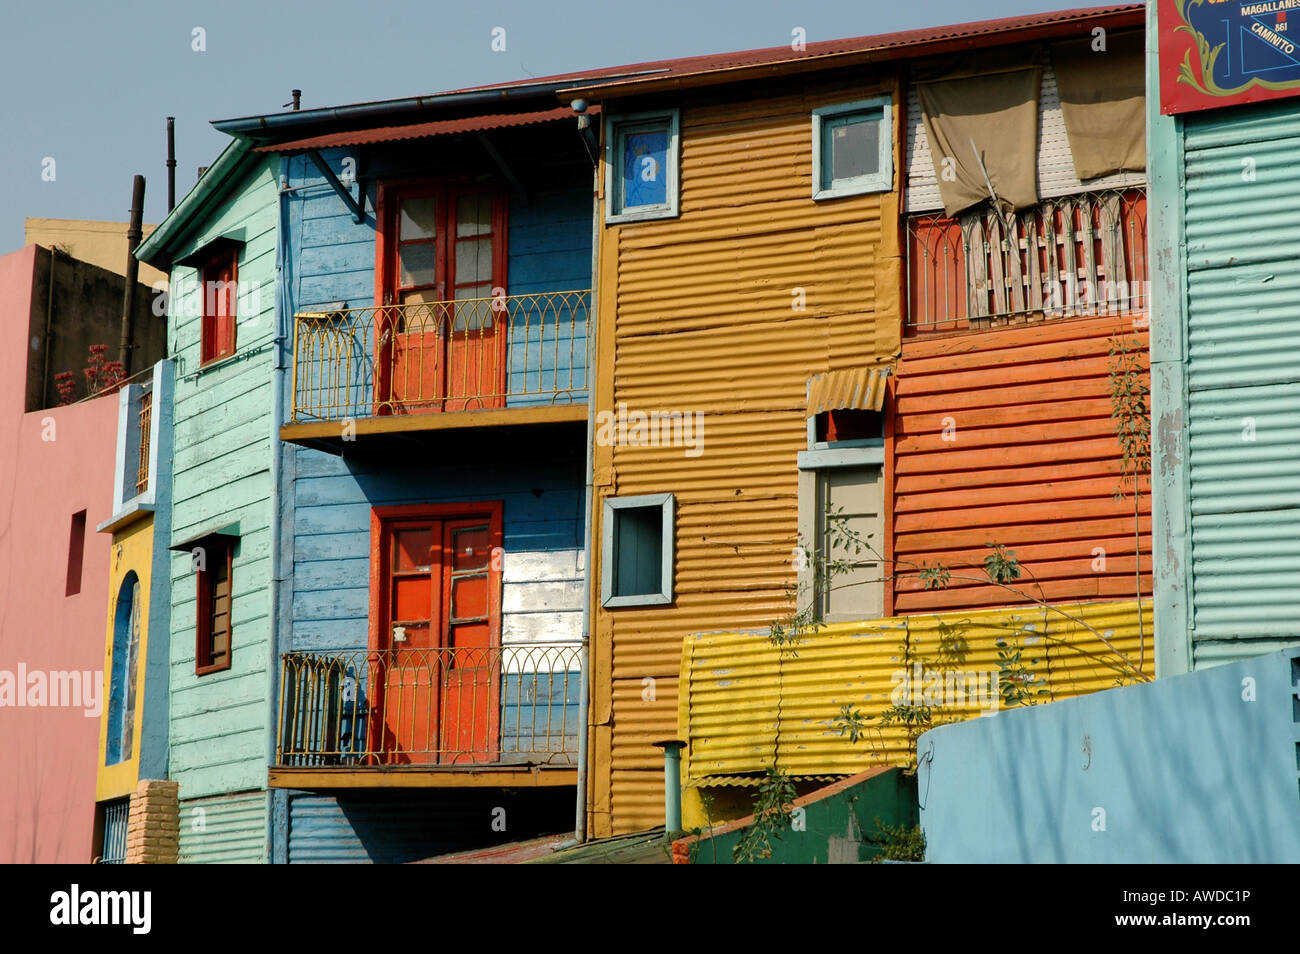 Coloured facade at Caminito, La Boca, Buenos Aires, Argentina Stock Photo